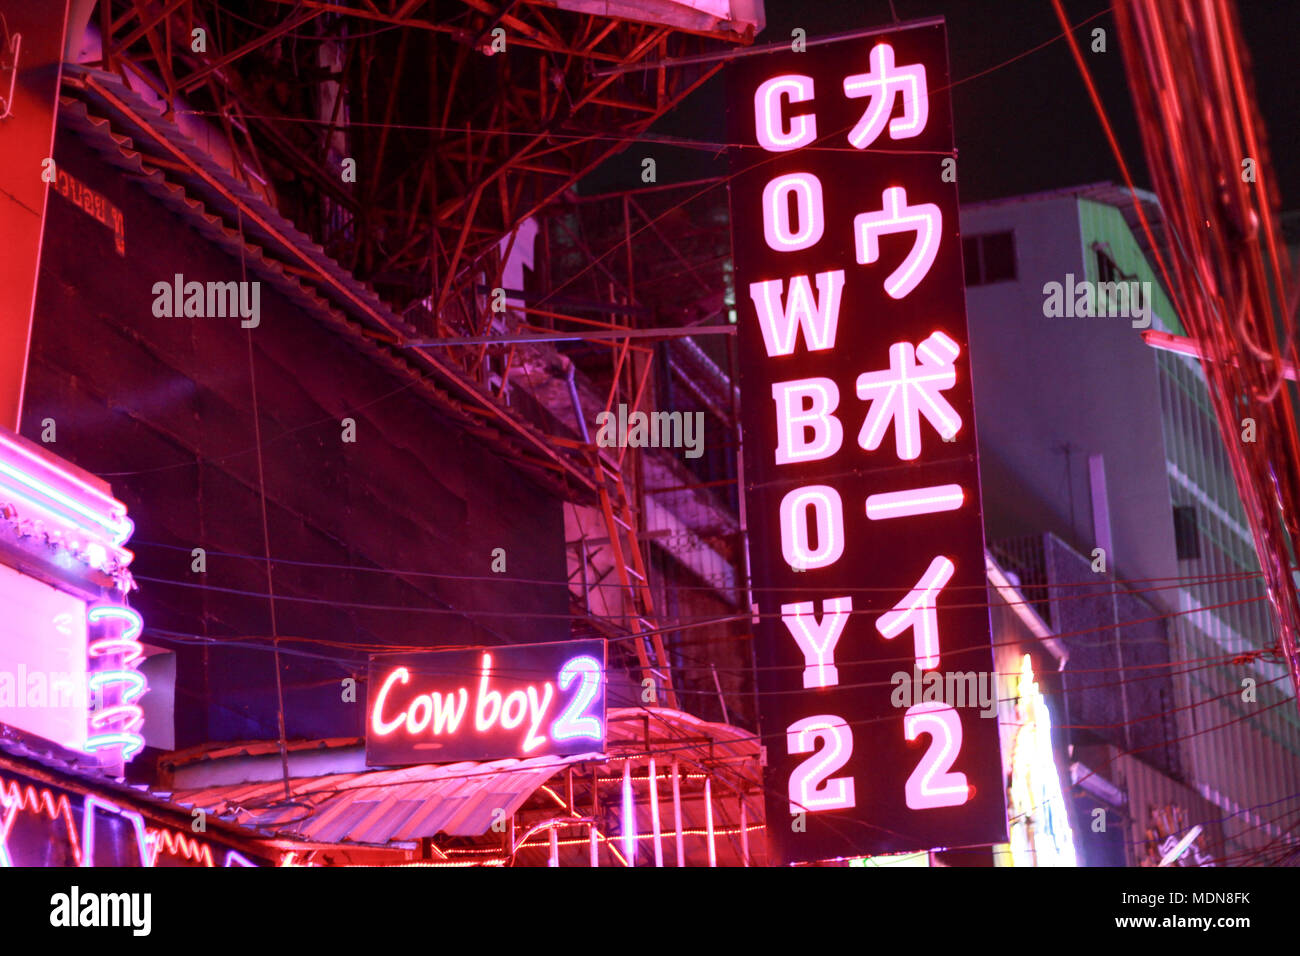 Soi Cowboy 2 Adult Entertainment Zone Bangkok Stockfoto